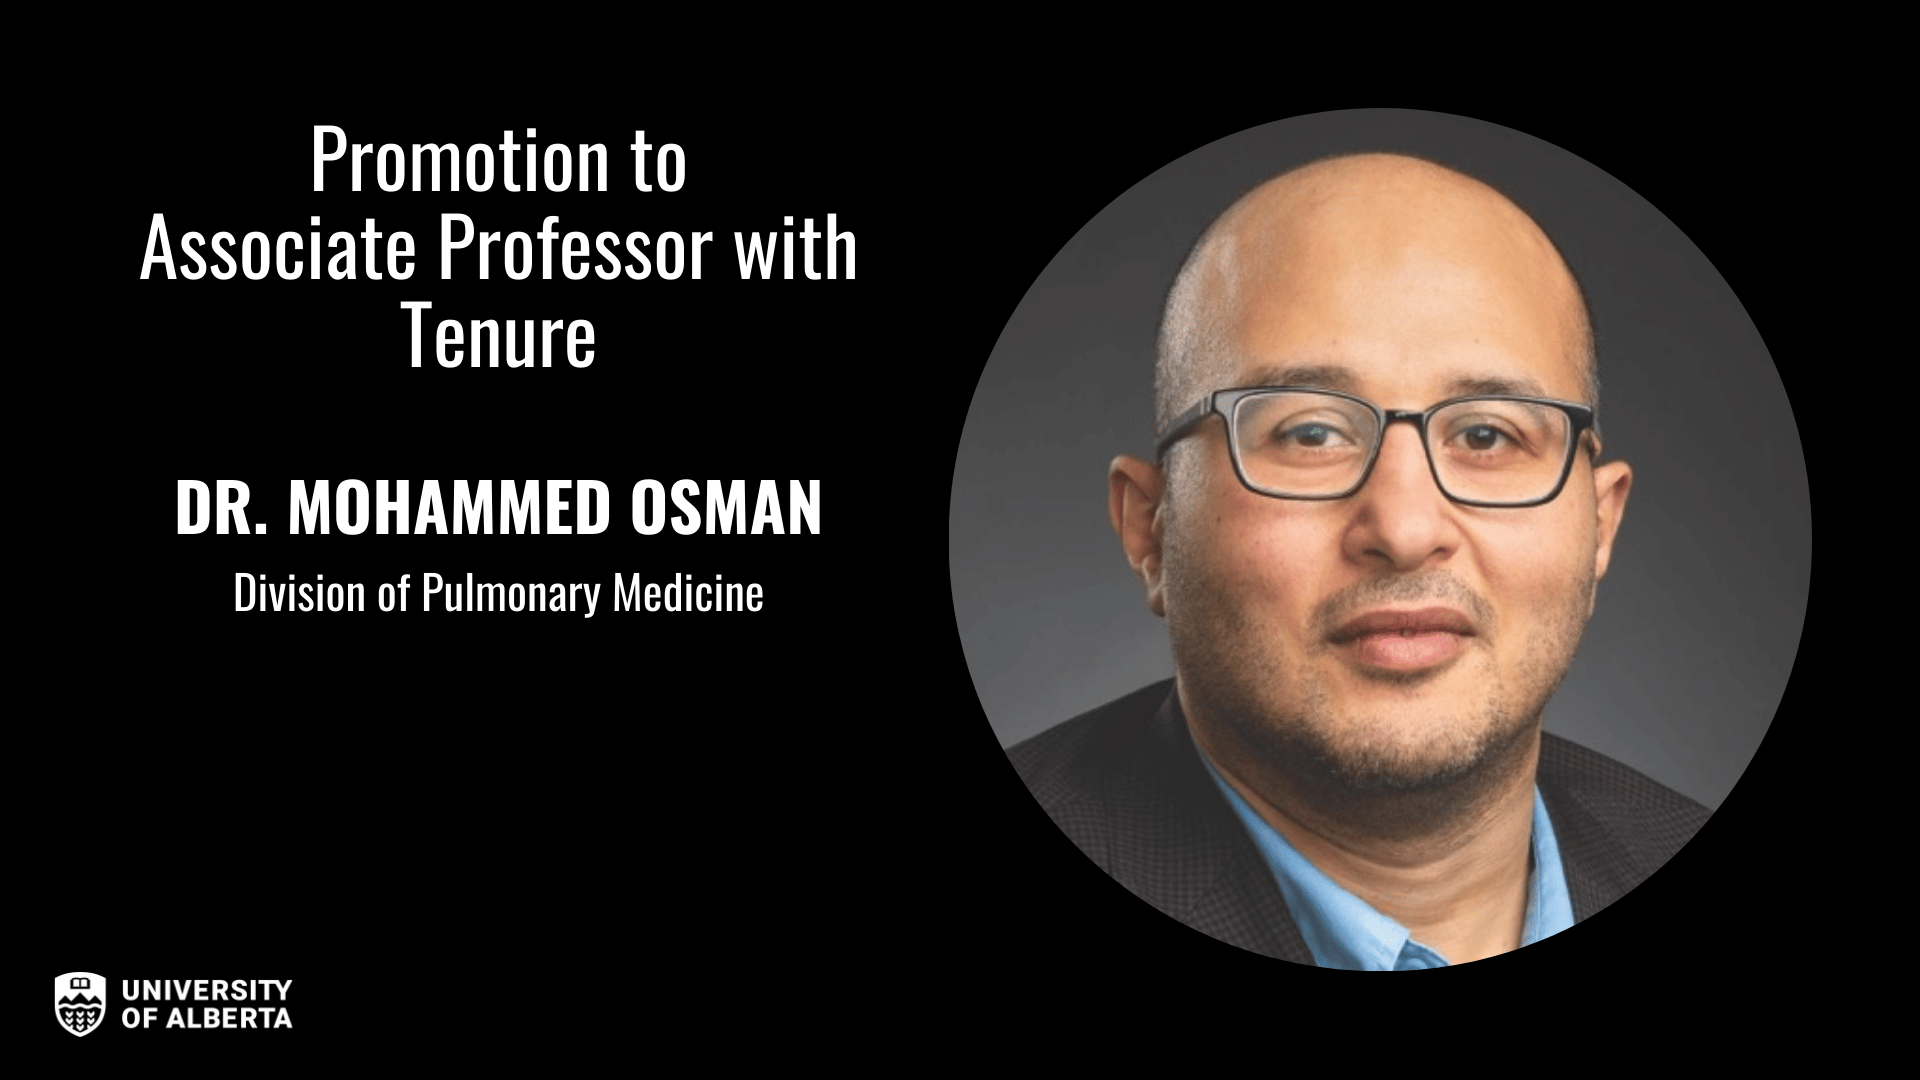 Dr. Mohammed Osman